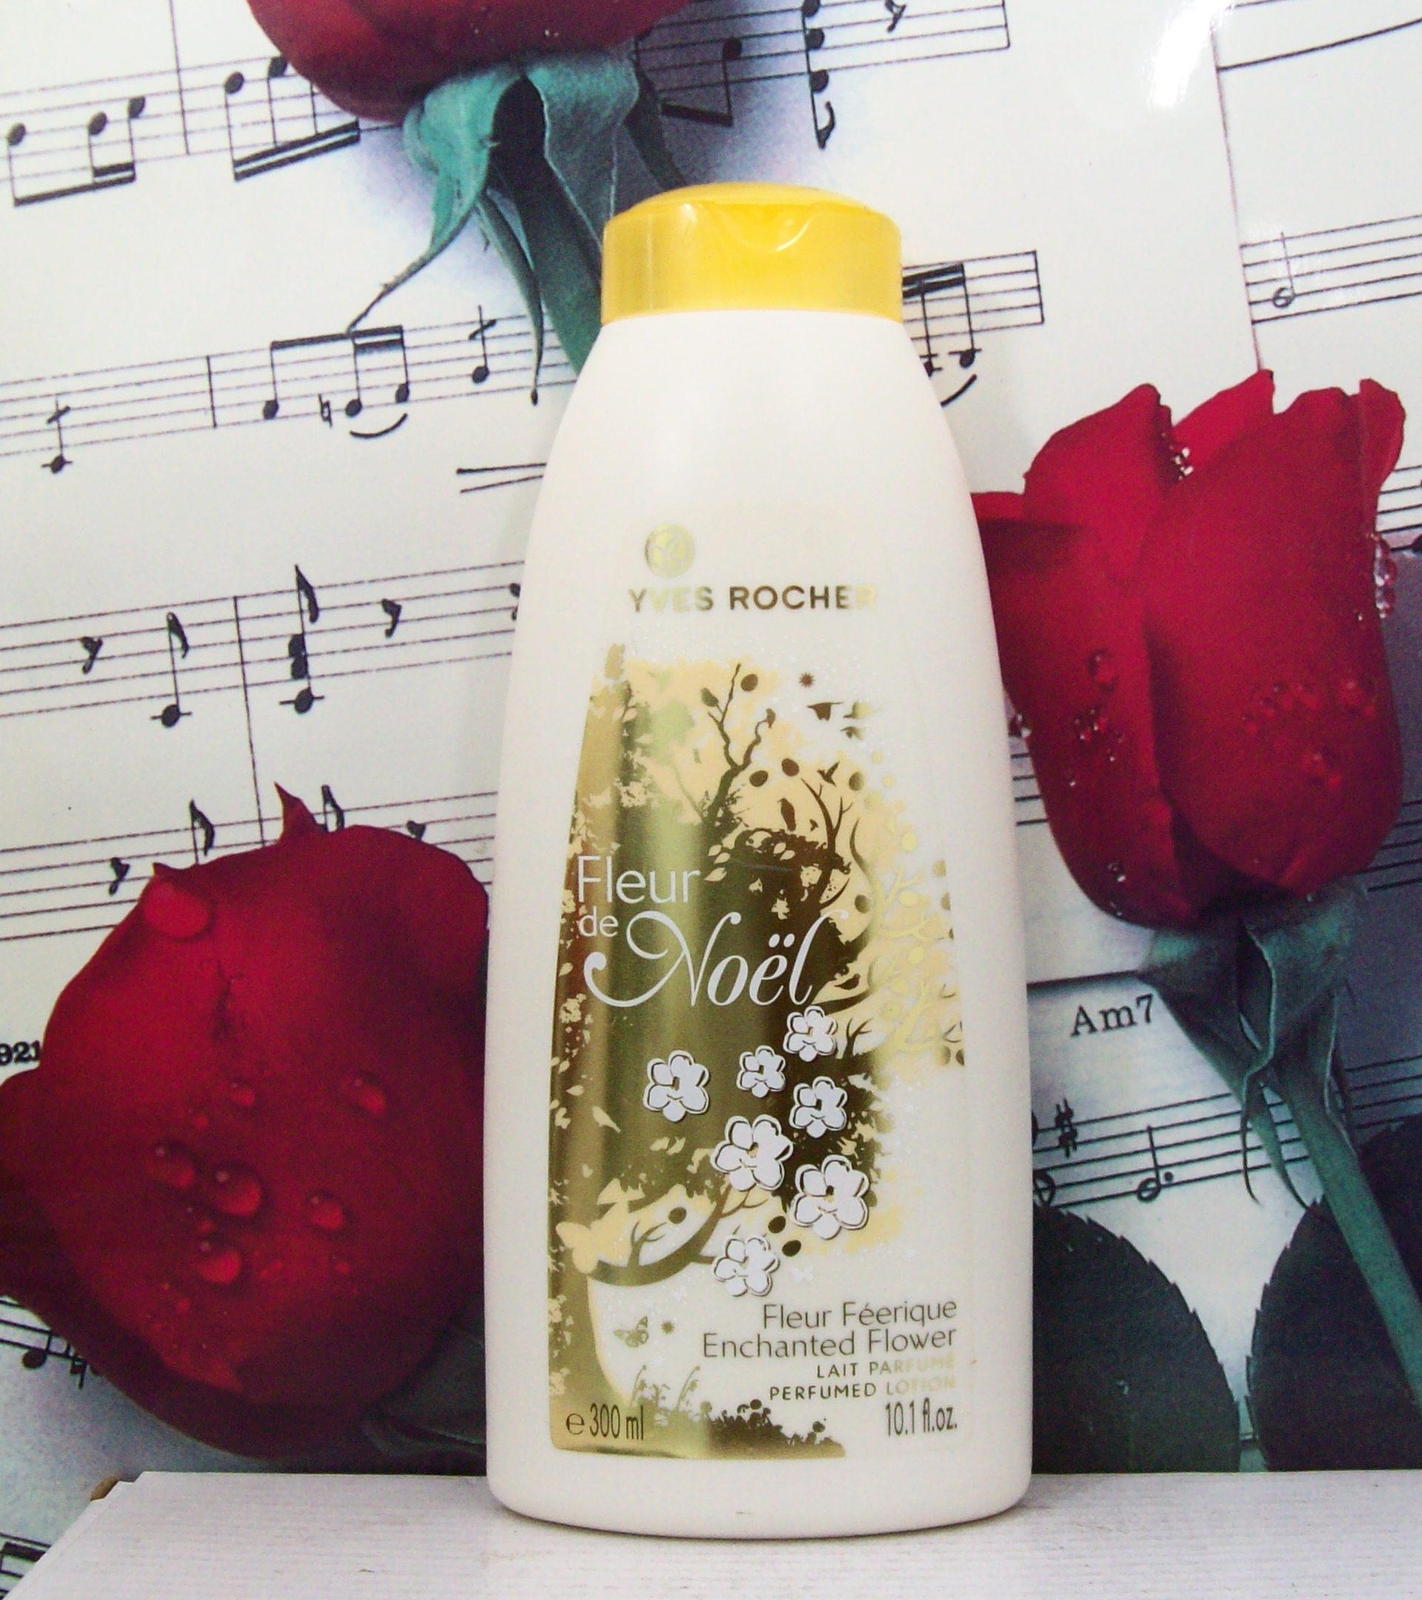 Yves Rocher Fleur De Noel Enchanted Flower Perfumed Lotion 10.1 FL. OZ. - $69.99